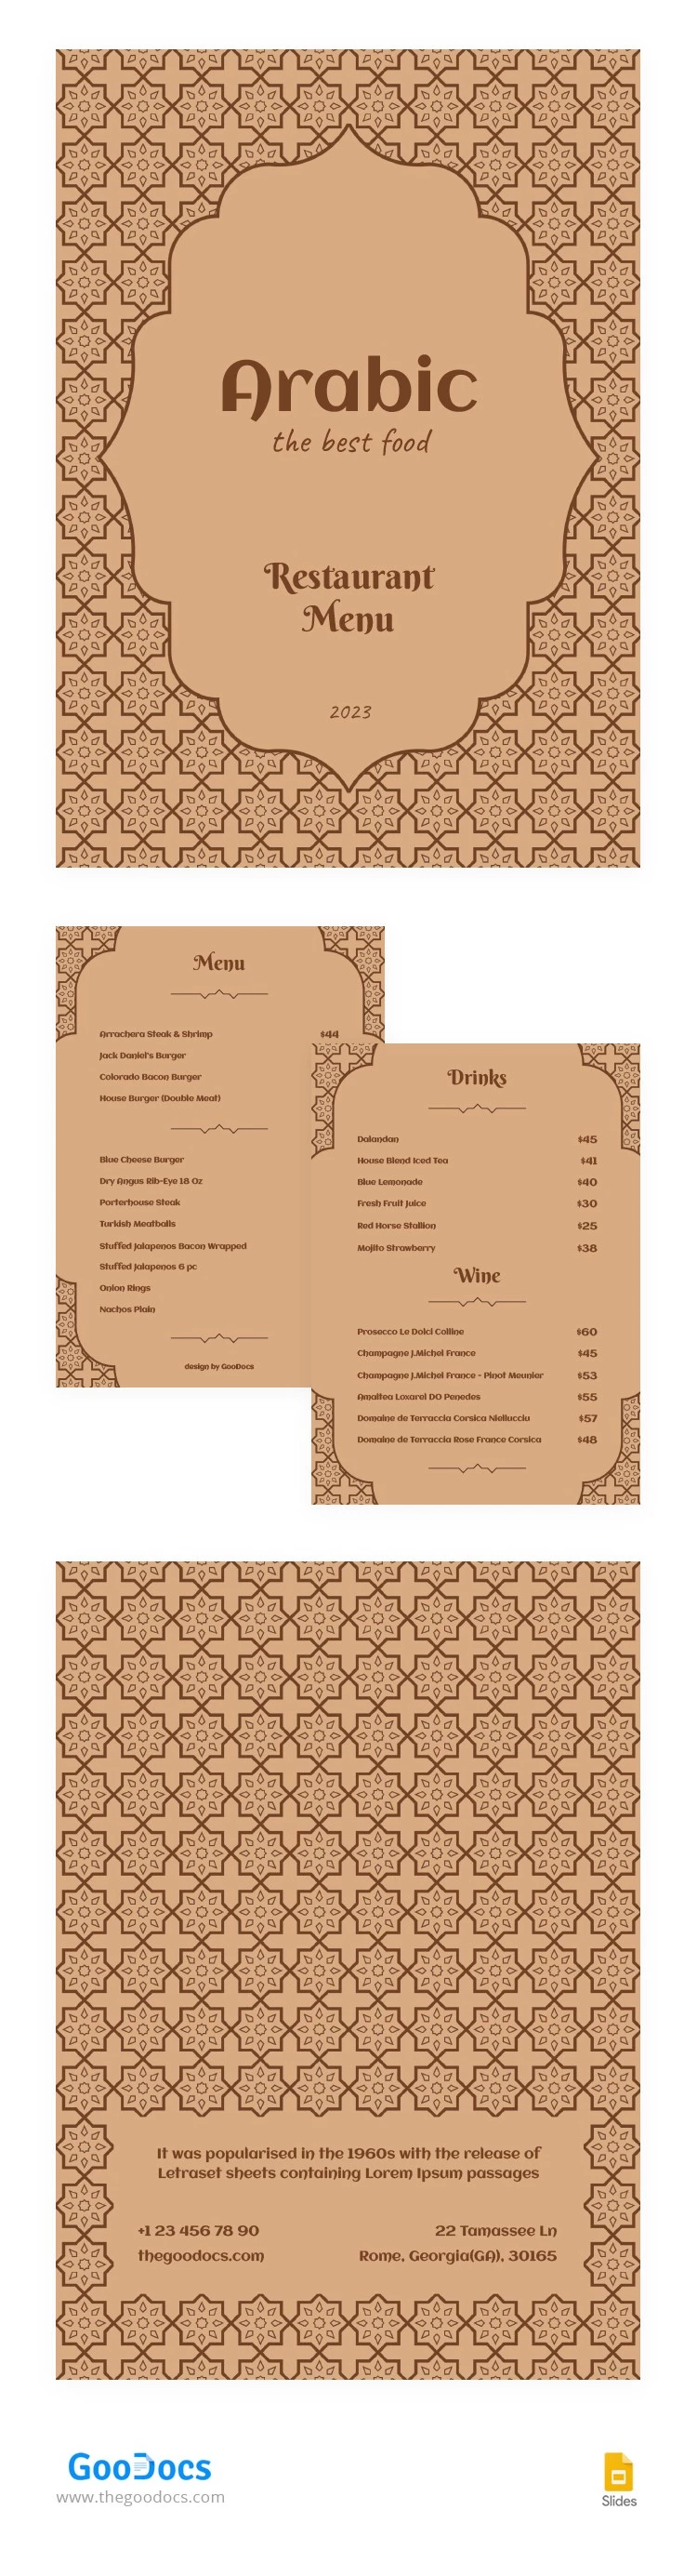 Menu lindo do restaurante árabe - free Google Docs Template - 10065275